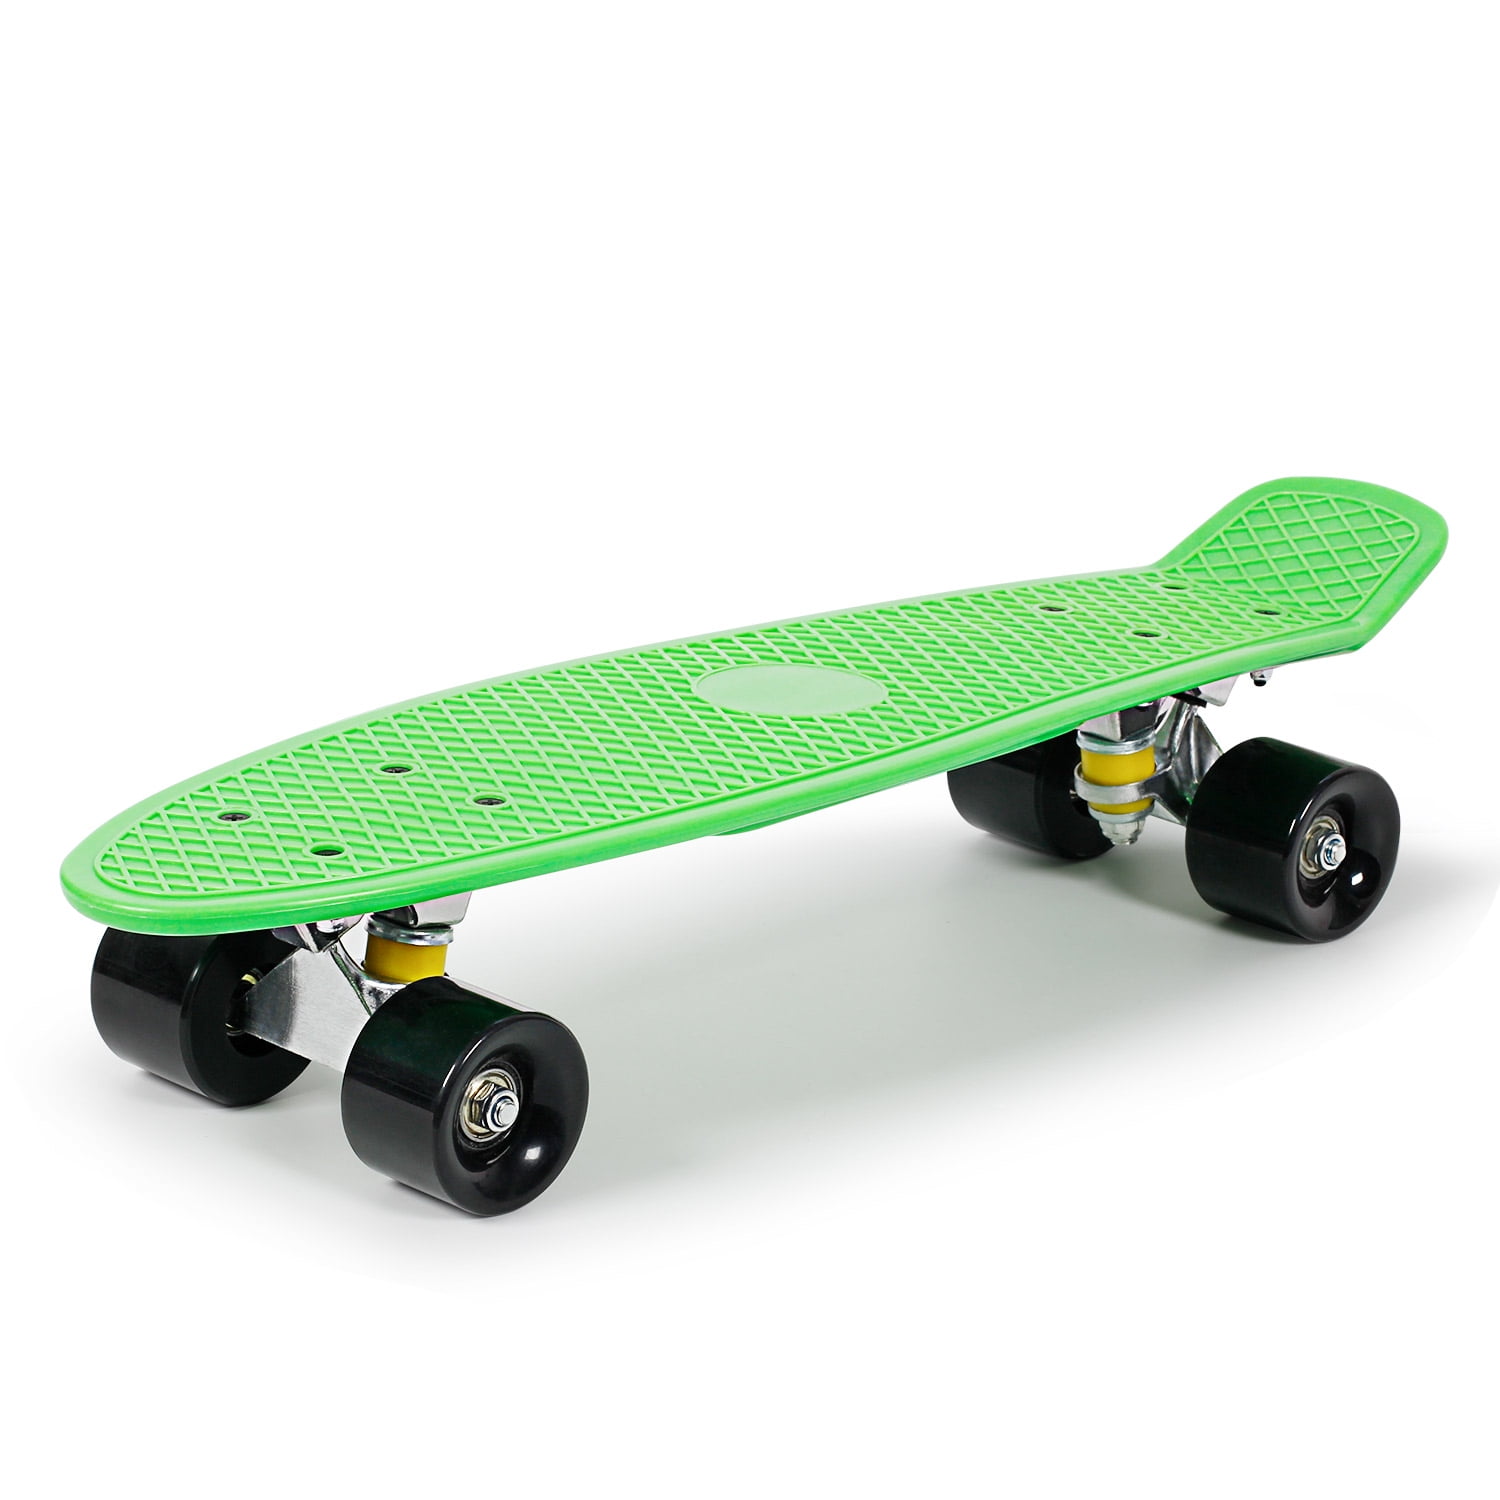 Rebel pro Glide retro skateboard mini Cruiser nuevo longboard 